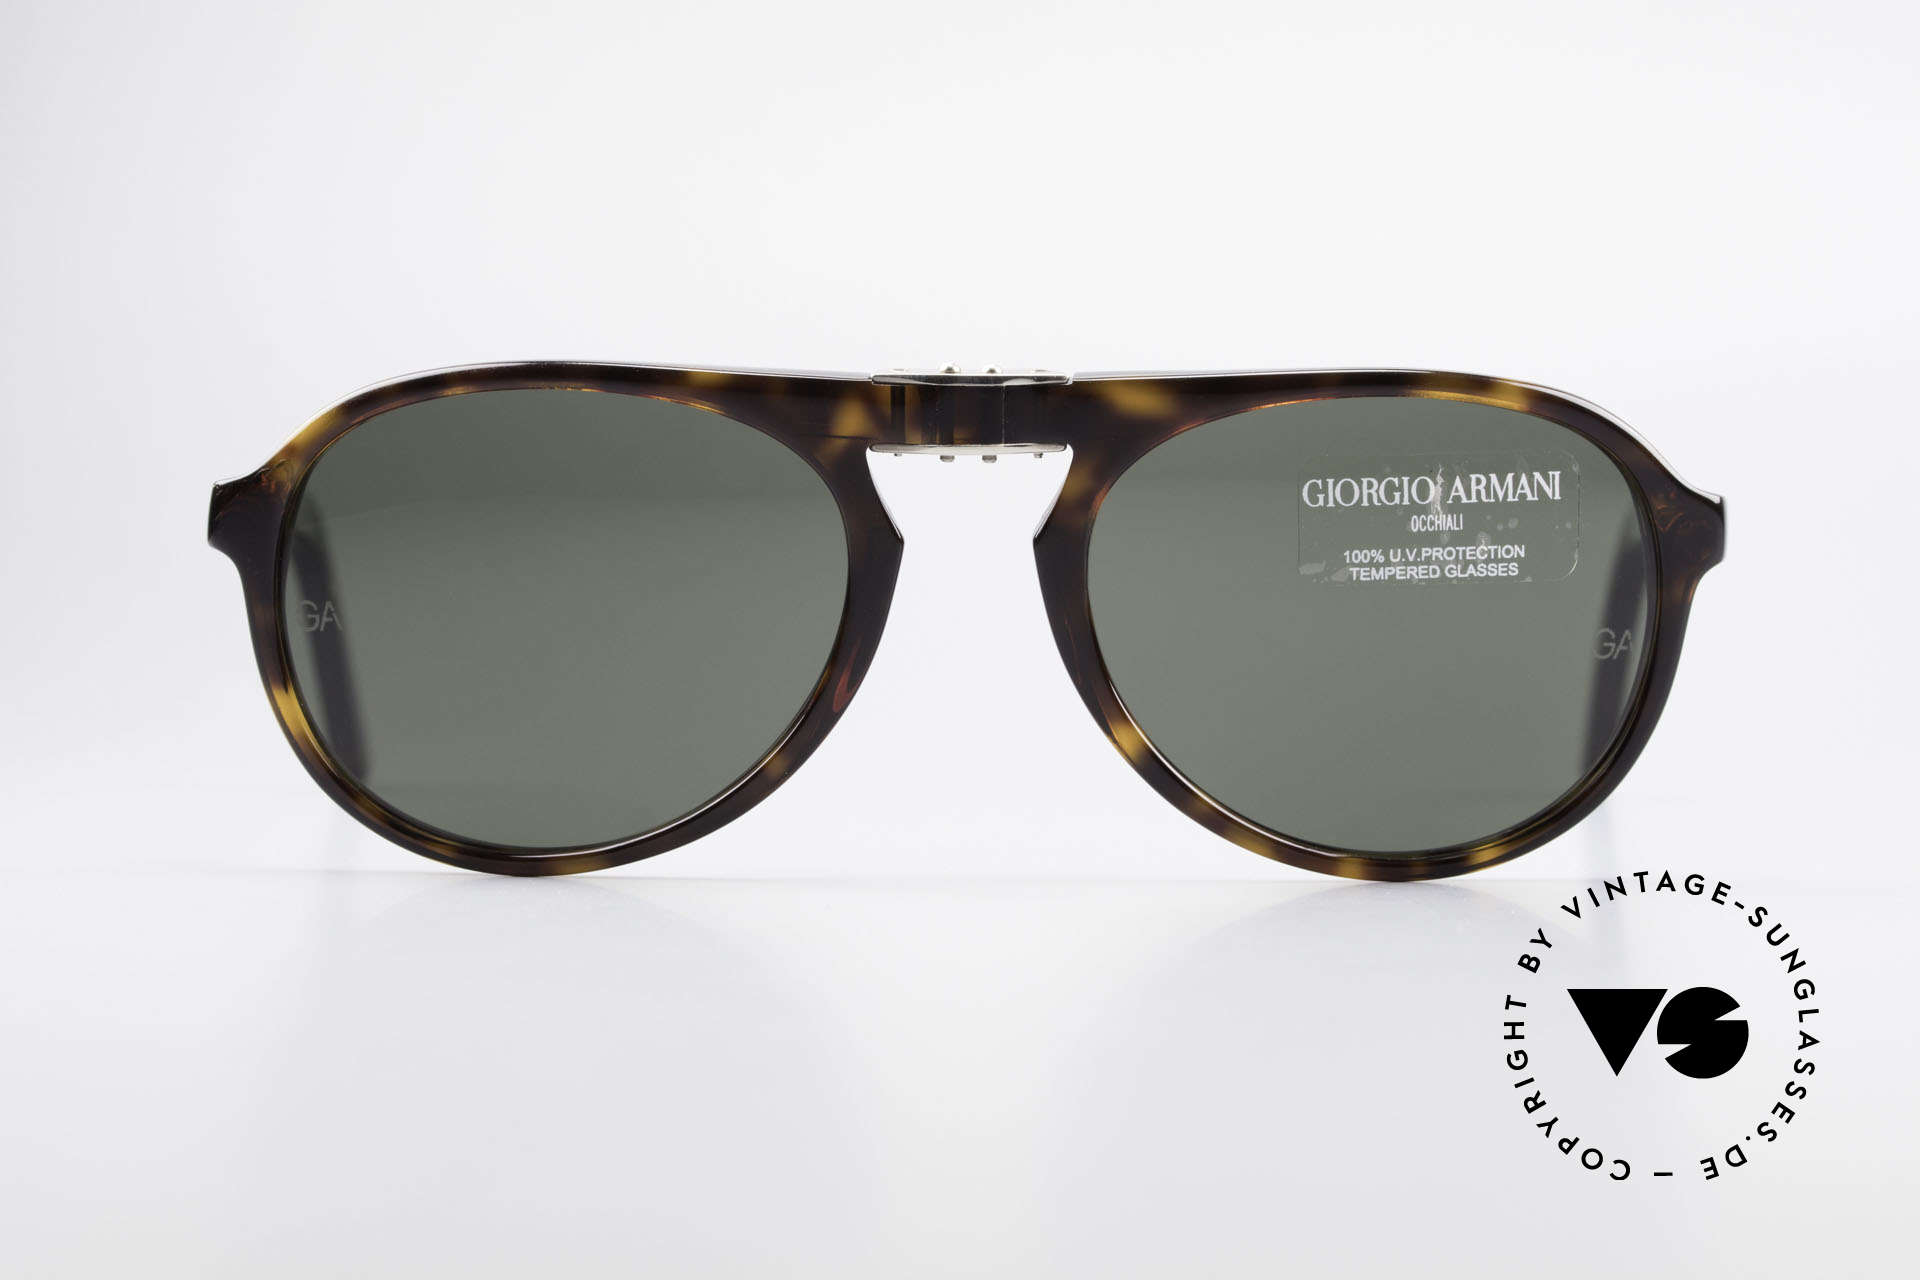 Sunglasses Giorgio Armani 2522 Folding Aviator Sunglasses